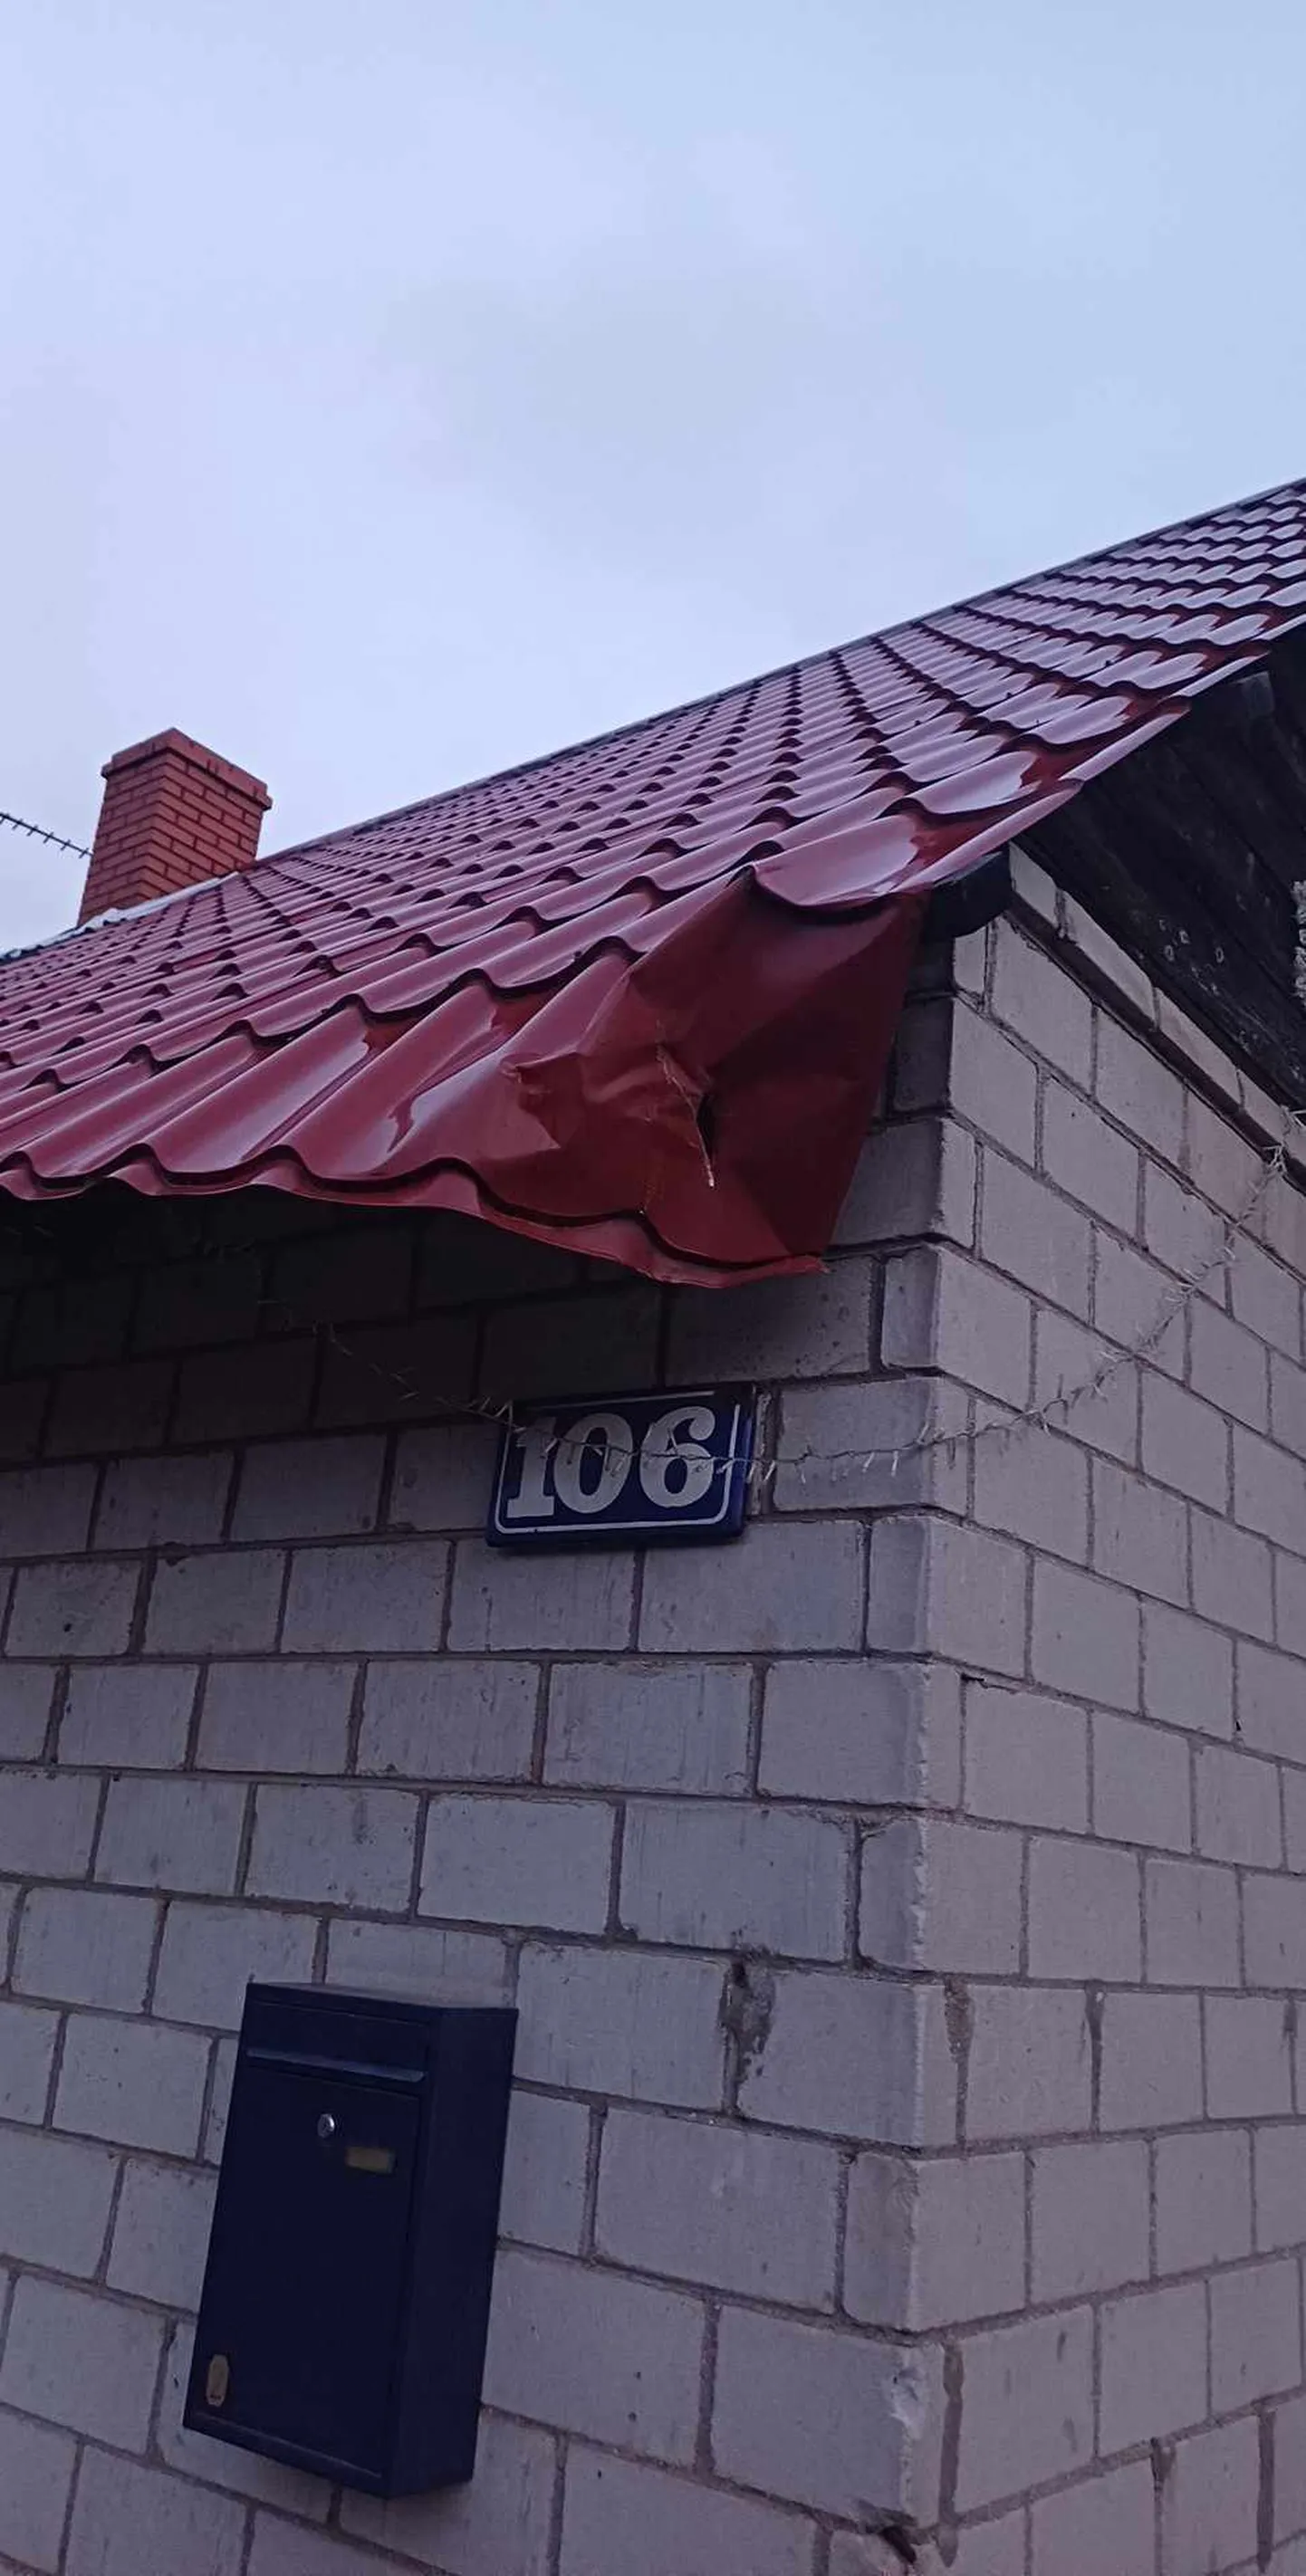 Valgas Võru tänaval on maja katus pärast veokilt saadud lööki lömmis.